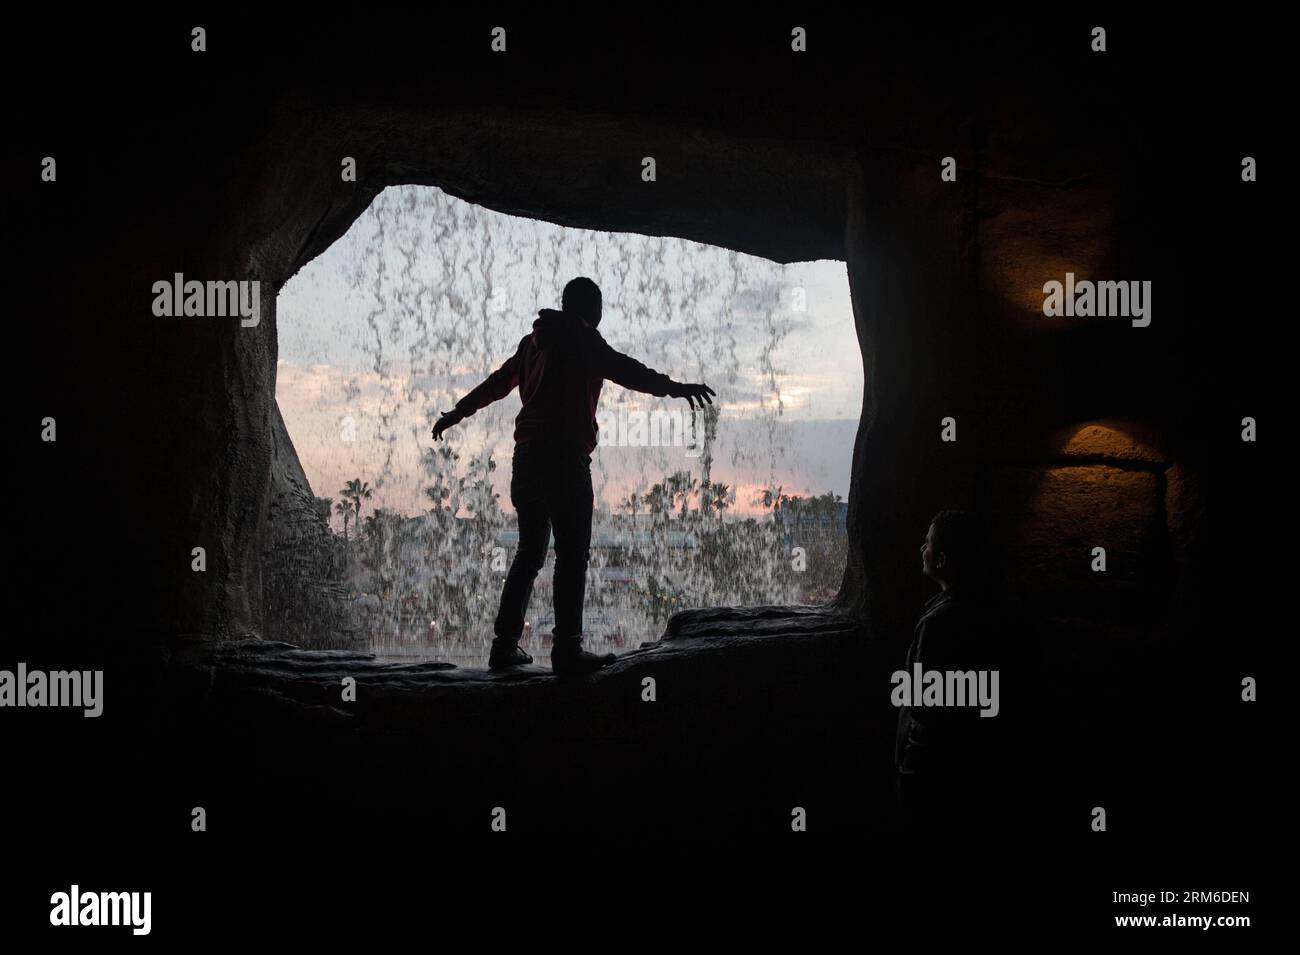 Un uomo posa per delle foto di fronte a una cascata artificiale nel Dream Park, un parco divertimenti situato nel sud-ovest del Cairo, capitale dell'Egitto, il 5 gennaio 2014. Il parco ha attratto famiglie locali e visitatori stranieri con decorazioni natalizie e Capodanno e sconti sui biglietti. (Xinhua/Pan Chaoyue) EGITTO-CAIRO-VITA QUOTIDIANA-INTRATTENIMENTO PUBLICATIONxNOTxINxCHN un uomo posa per le foto di fronte alla cascata artificiale nel Dream Park al parco divertimenti situato nella capitale sud-occidentale del Cairo dell'Egitto IL 5 gennaio 2014 il parco ha attratto famiglie locali e visitatori stranieri con Natale Foto Stock